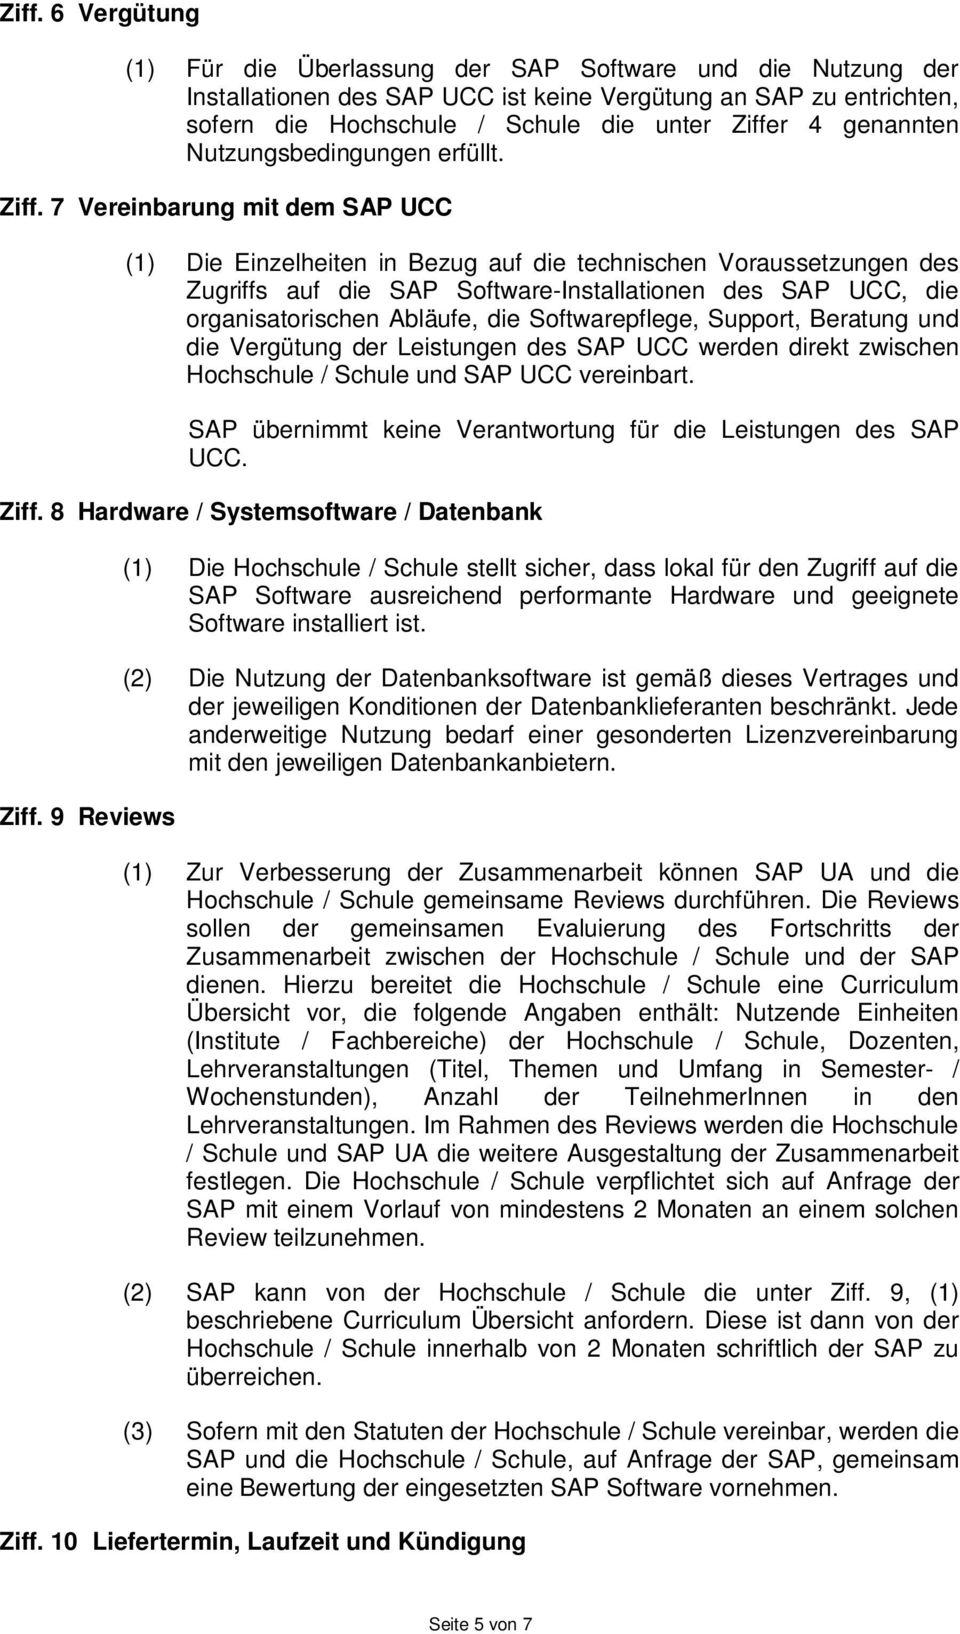 7 Vereinbarung mit dem SAP UCC (1) Die Einzelheiten in Bezug auf die technischen Voraussetzungen des Zugriffs auf die SAP Software-Installationen des SAP UCC, die organisatorischen Abläufe, die